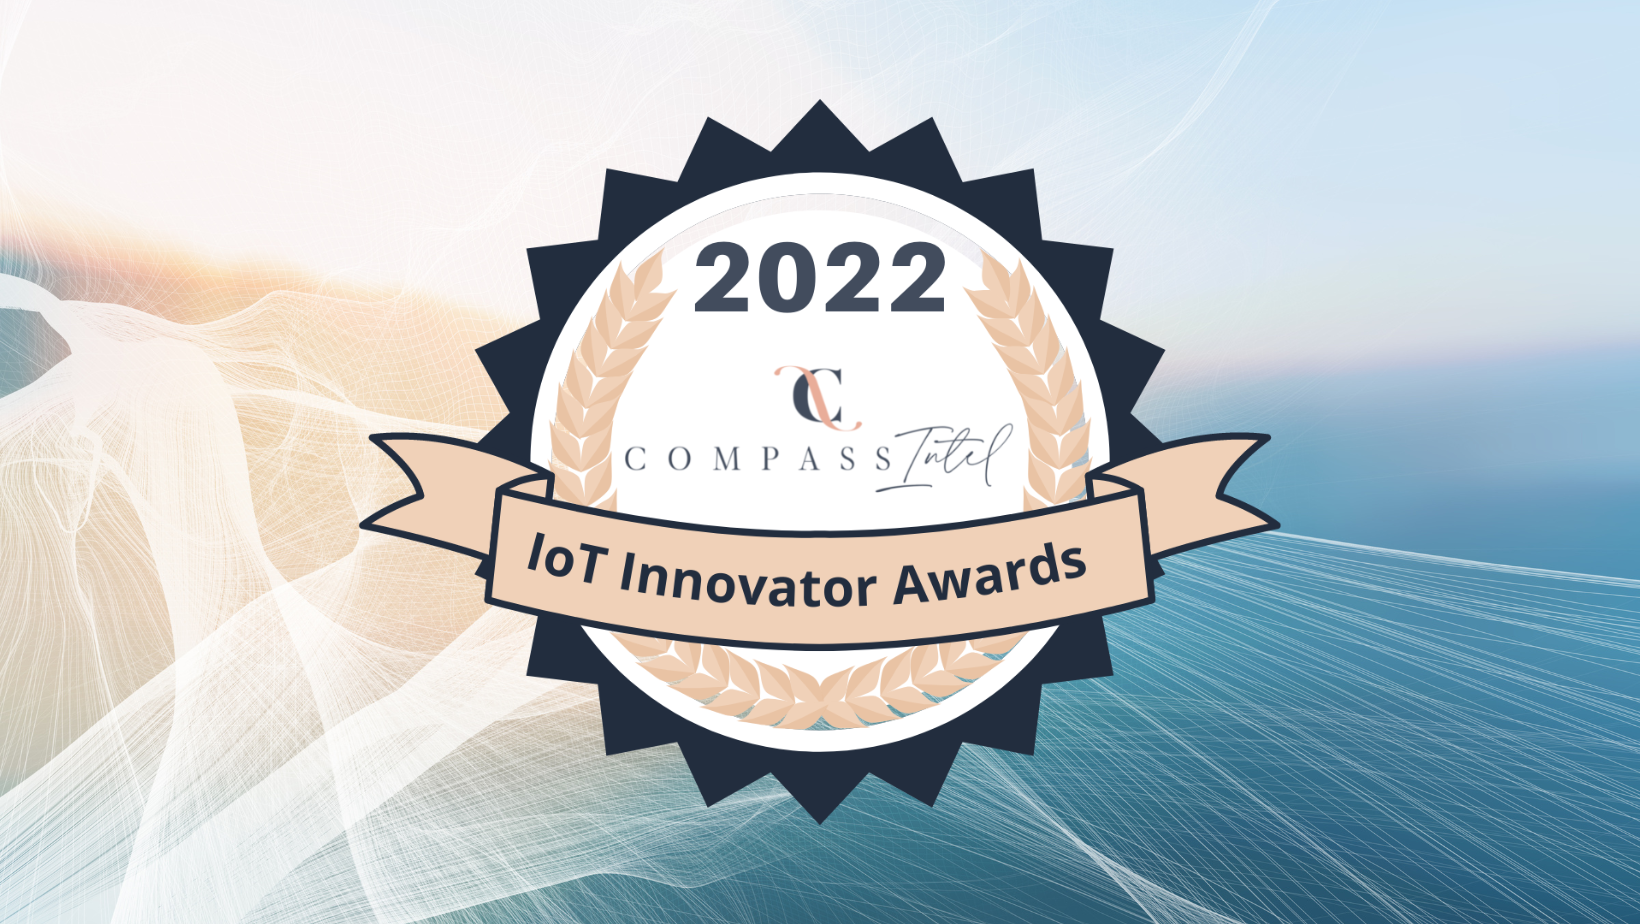 2022 CompassIntel IoT Innovator Awards